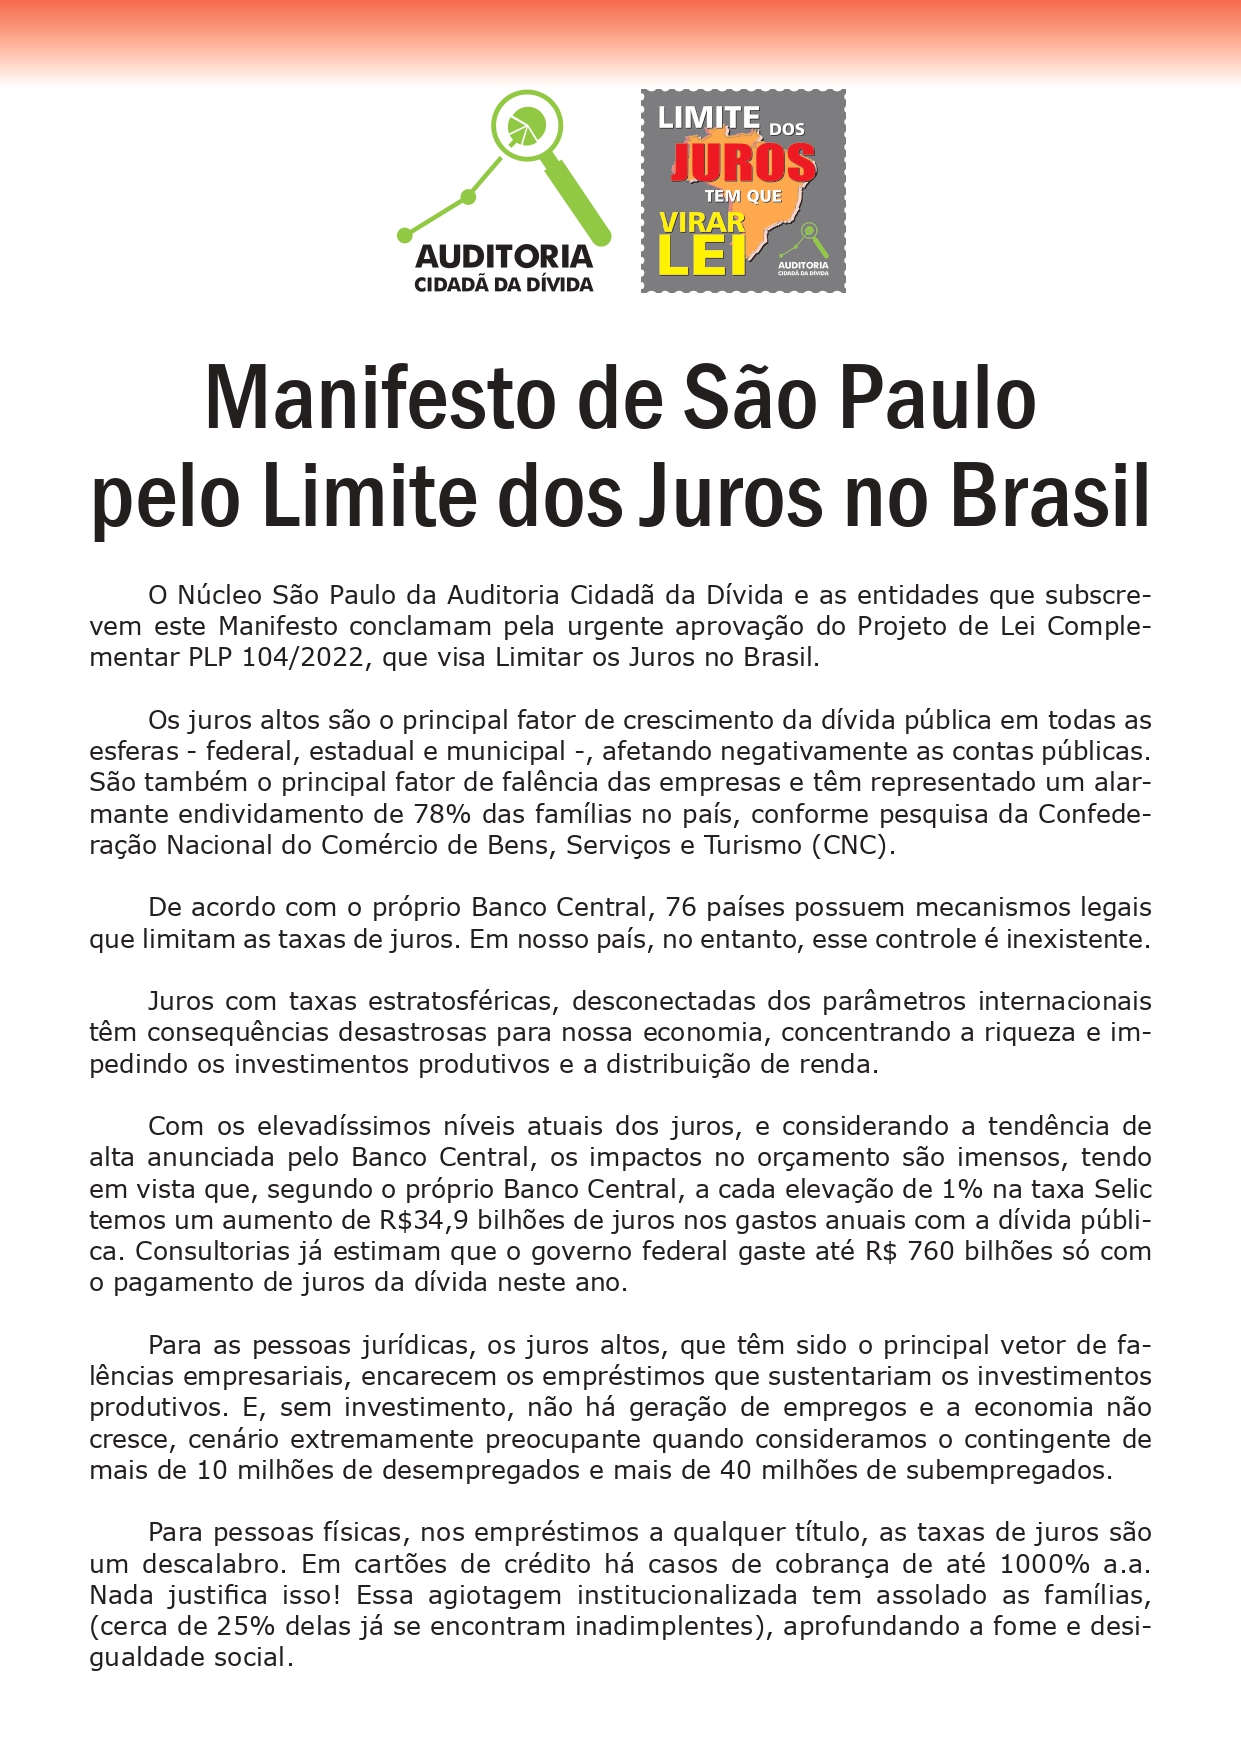 ASSINE AQUI - Manifesto de São Paulo pelo Limite dos Juros no Brasil -  Auditoria Cidadã da Dívida